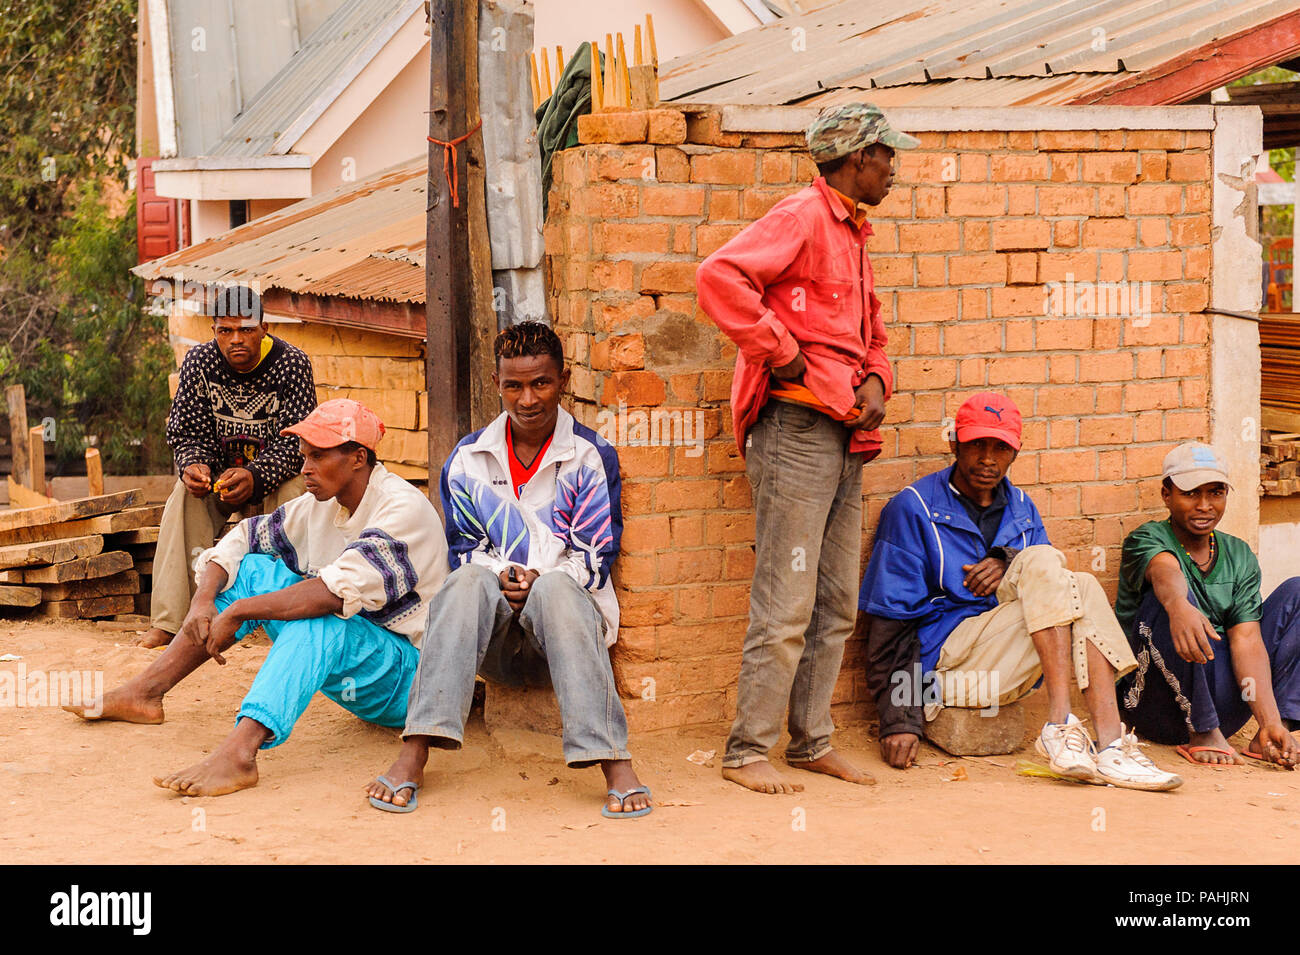 ANTANANARIVO, Madagaskar - 29. JUNI 2011: Unbekannter Madagaskar Leute auf der Straße sitzen. Menschen in Madagaskar Leiden der Armut aufgrund der langsamen Dev Stockfoto